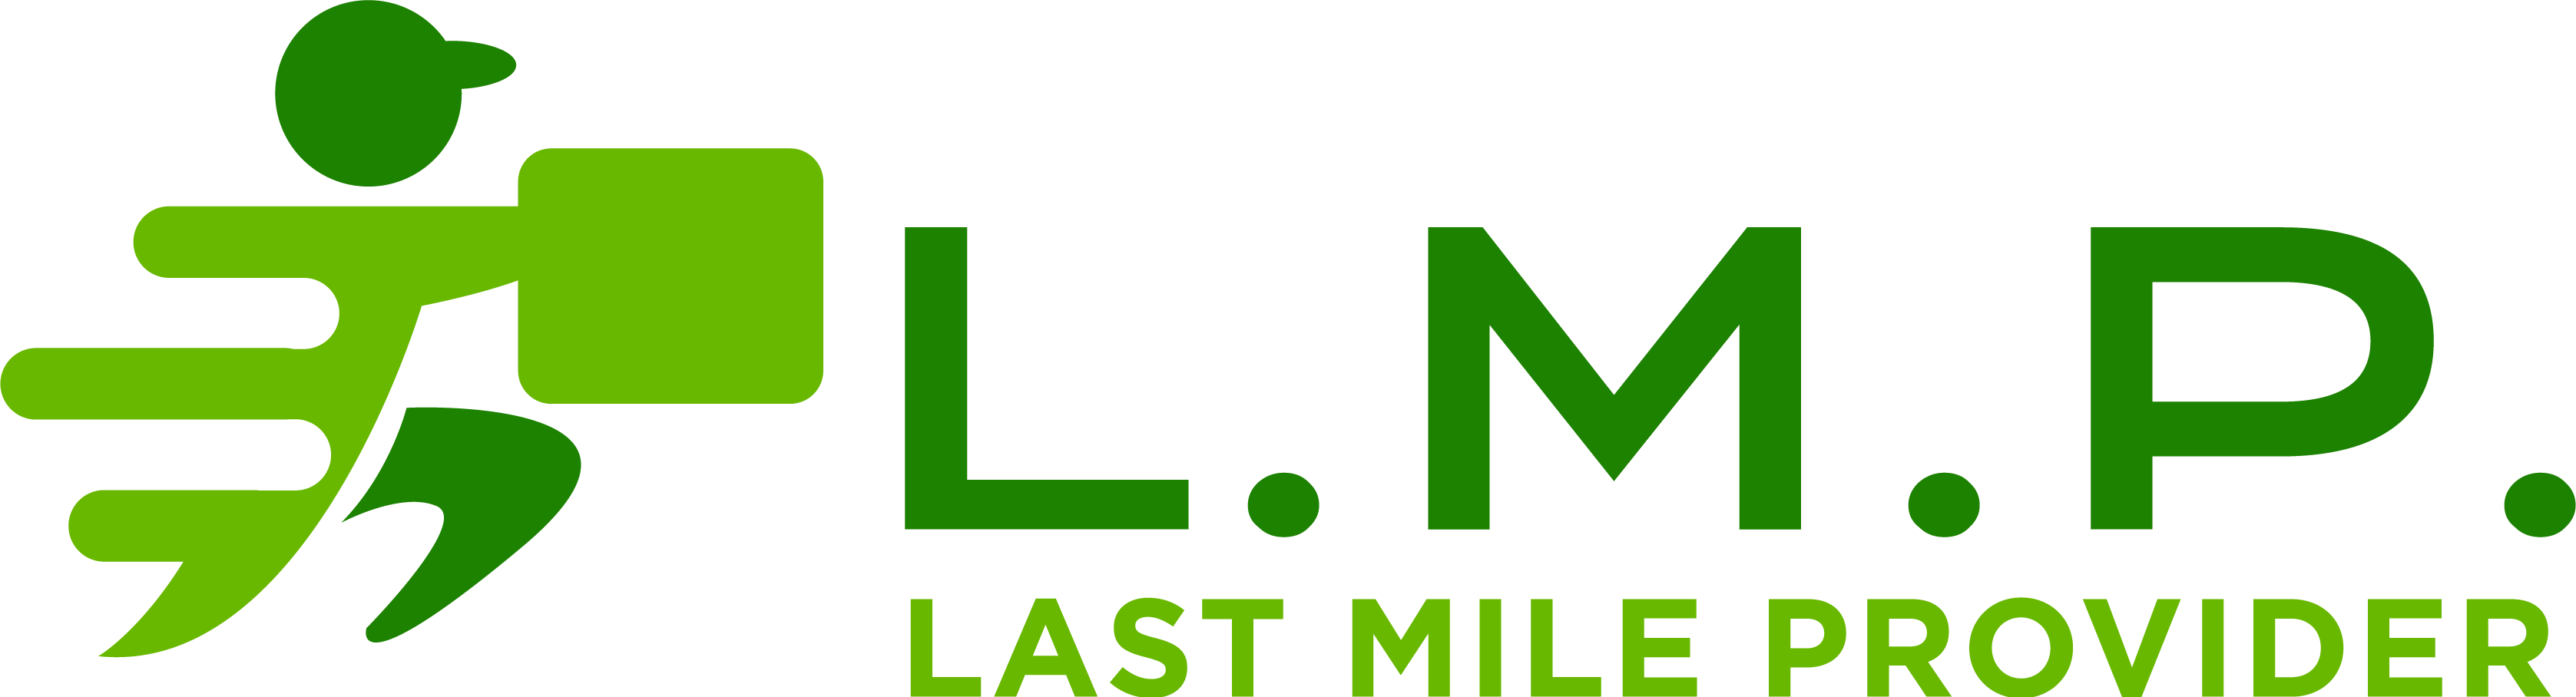 Last Mile Provider logga